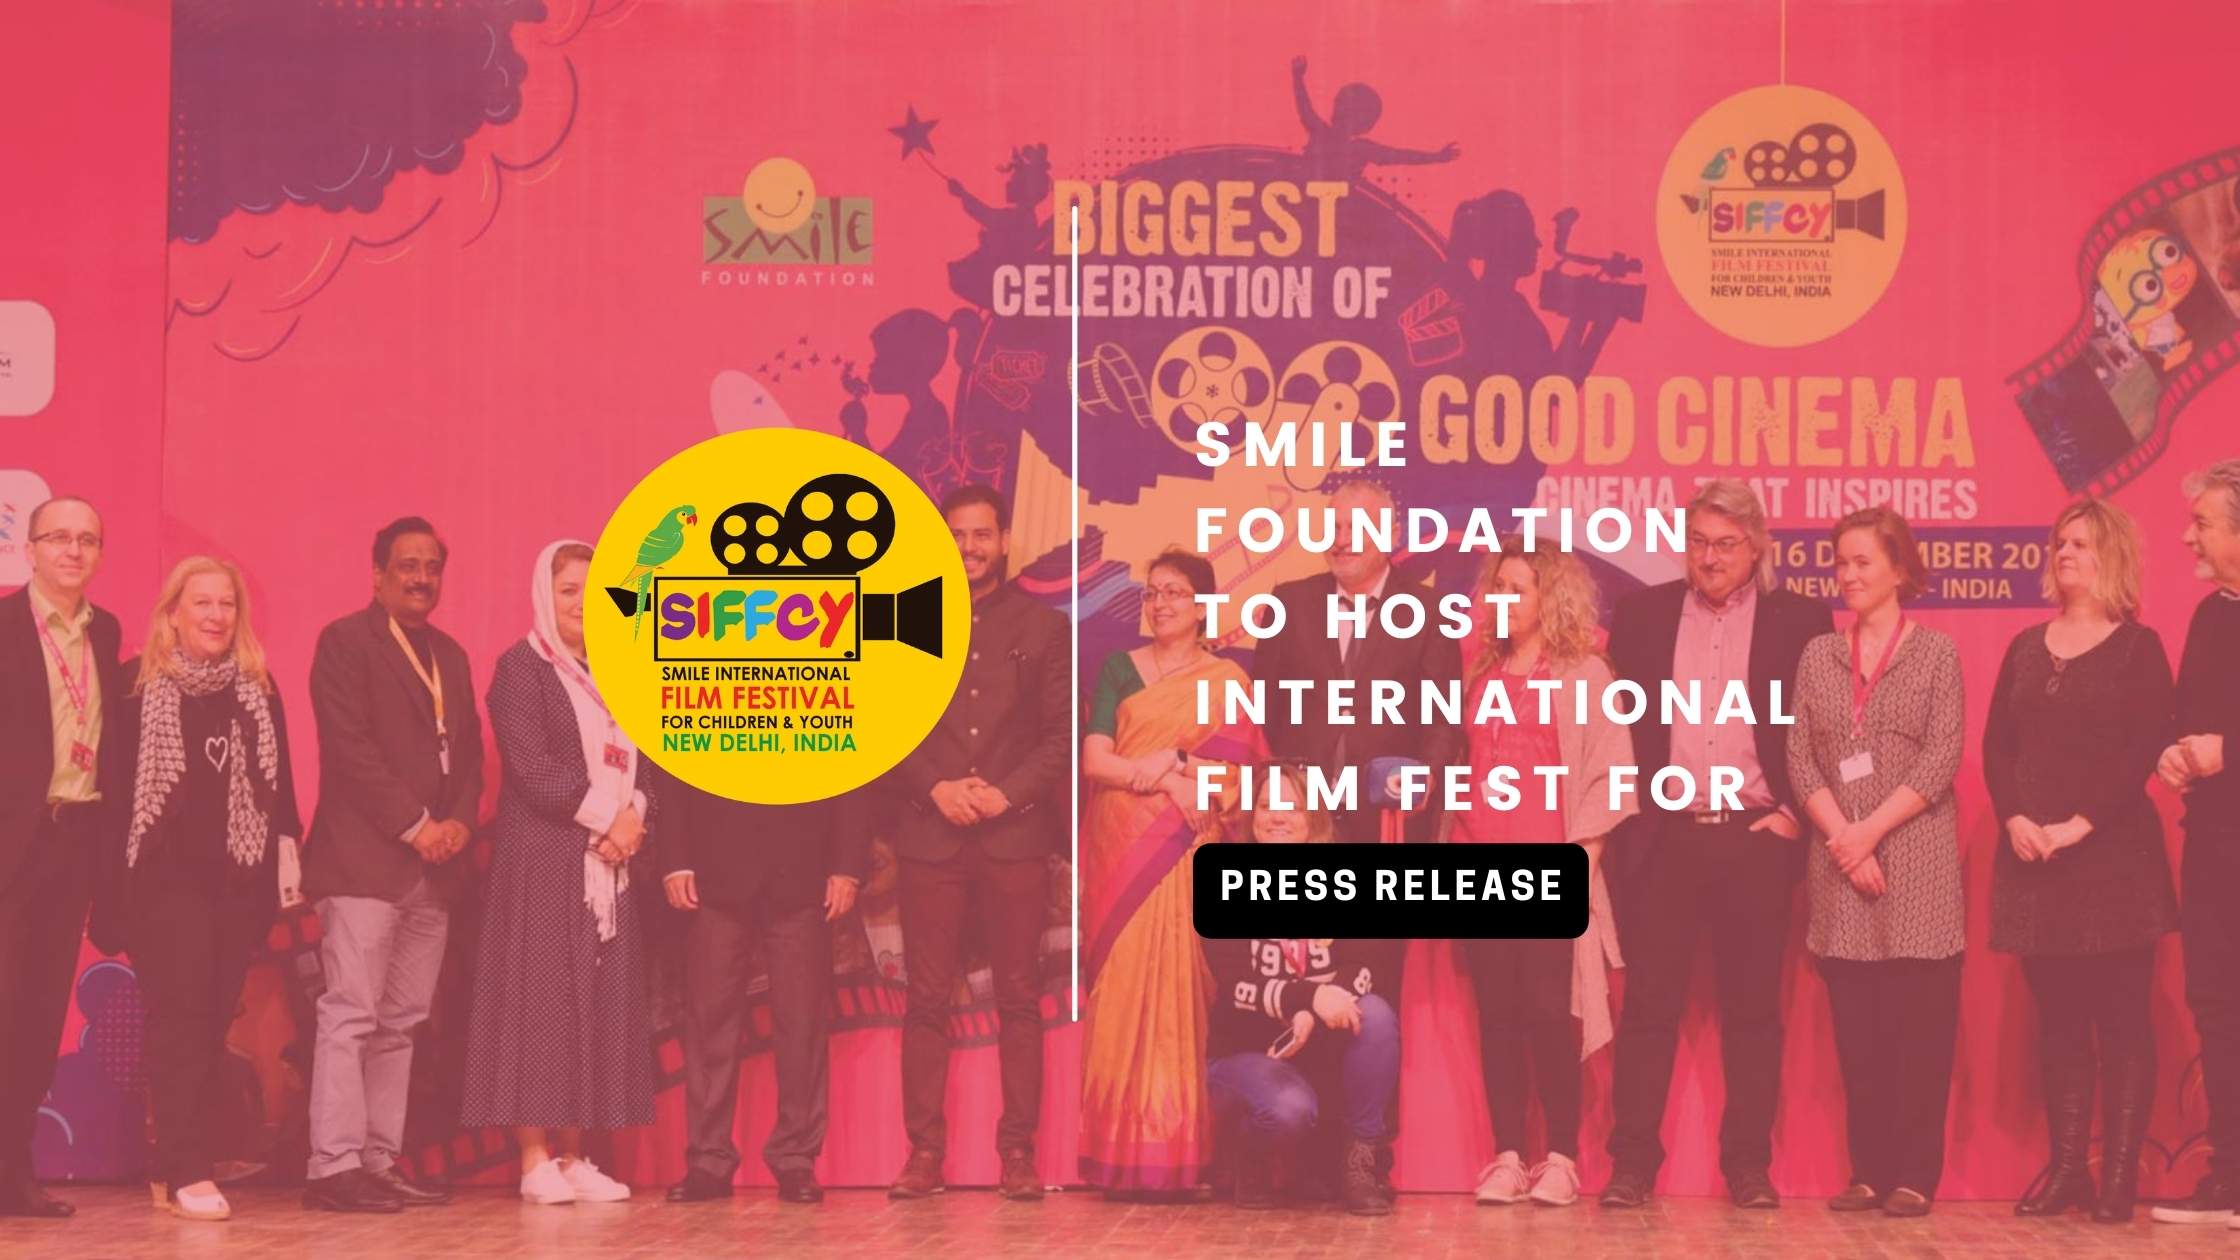 SMILE FOUNDATION TO HOST INTERNATIONAL FILM FEST FOR KIDS